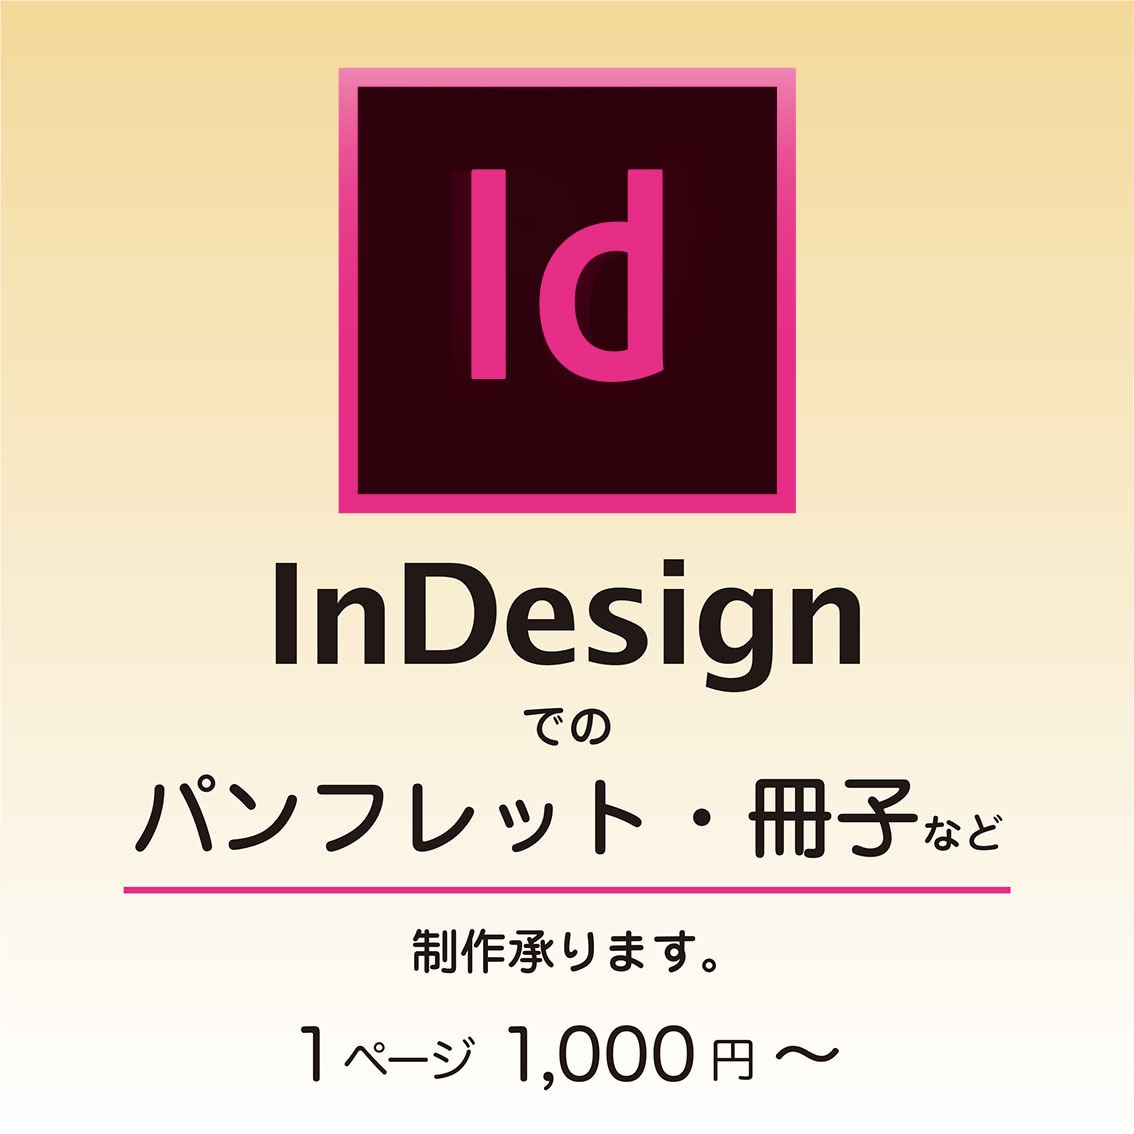 InDesignで書籍の組版・デザインいたします DTP、書籍関連デザイン、組版作業など、何でもご相談ください イメージ1